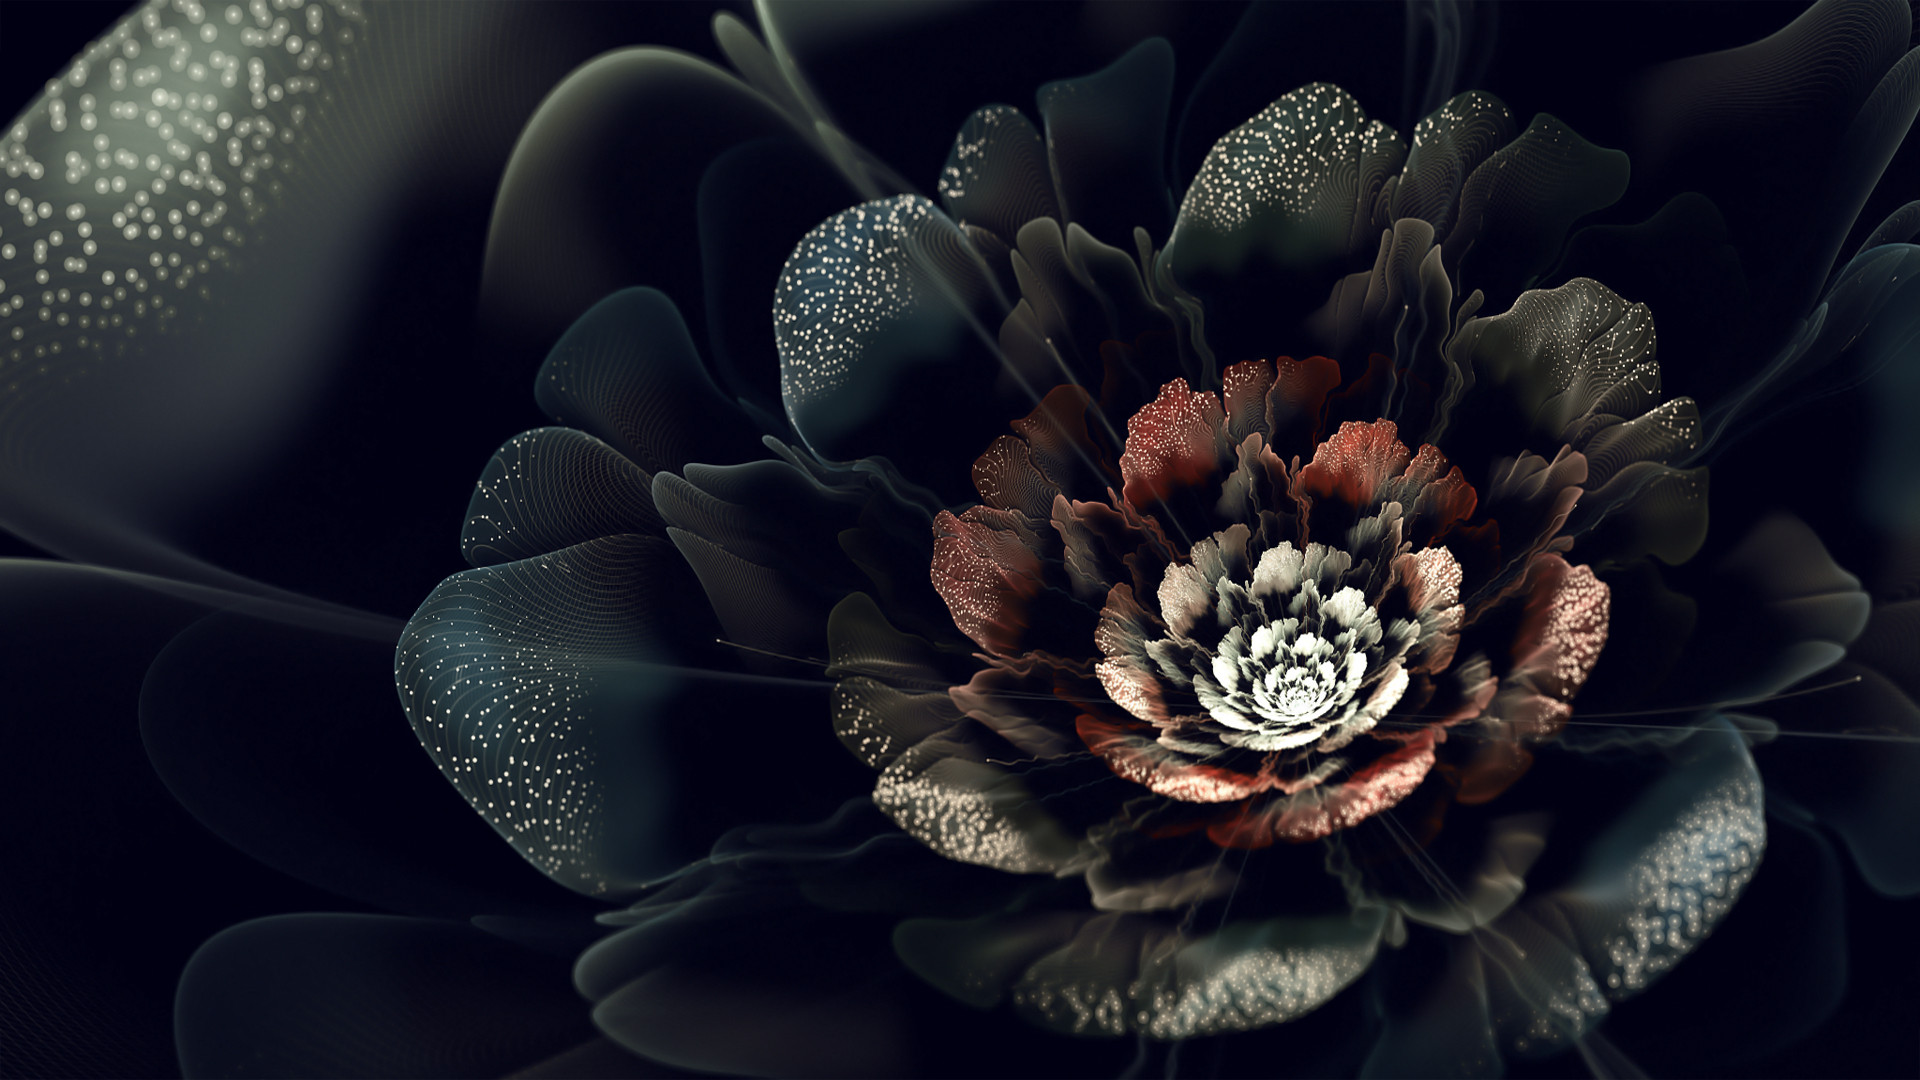 Black Rose Backgrounds - WallpaperSafari